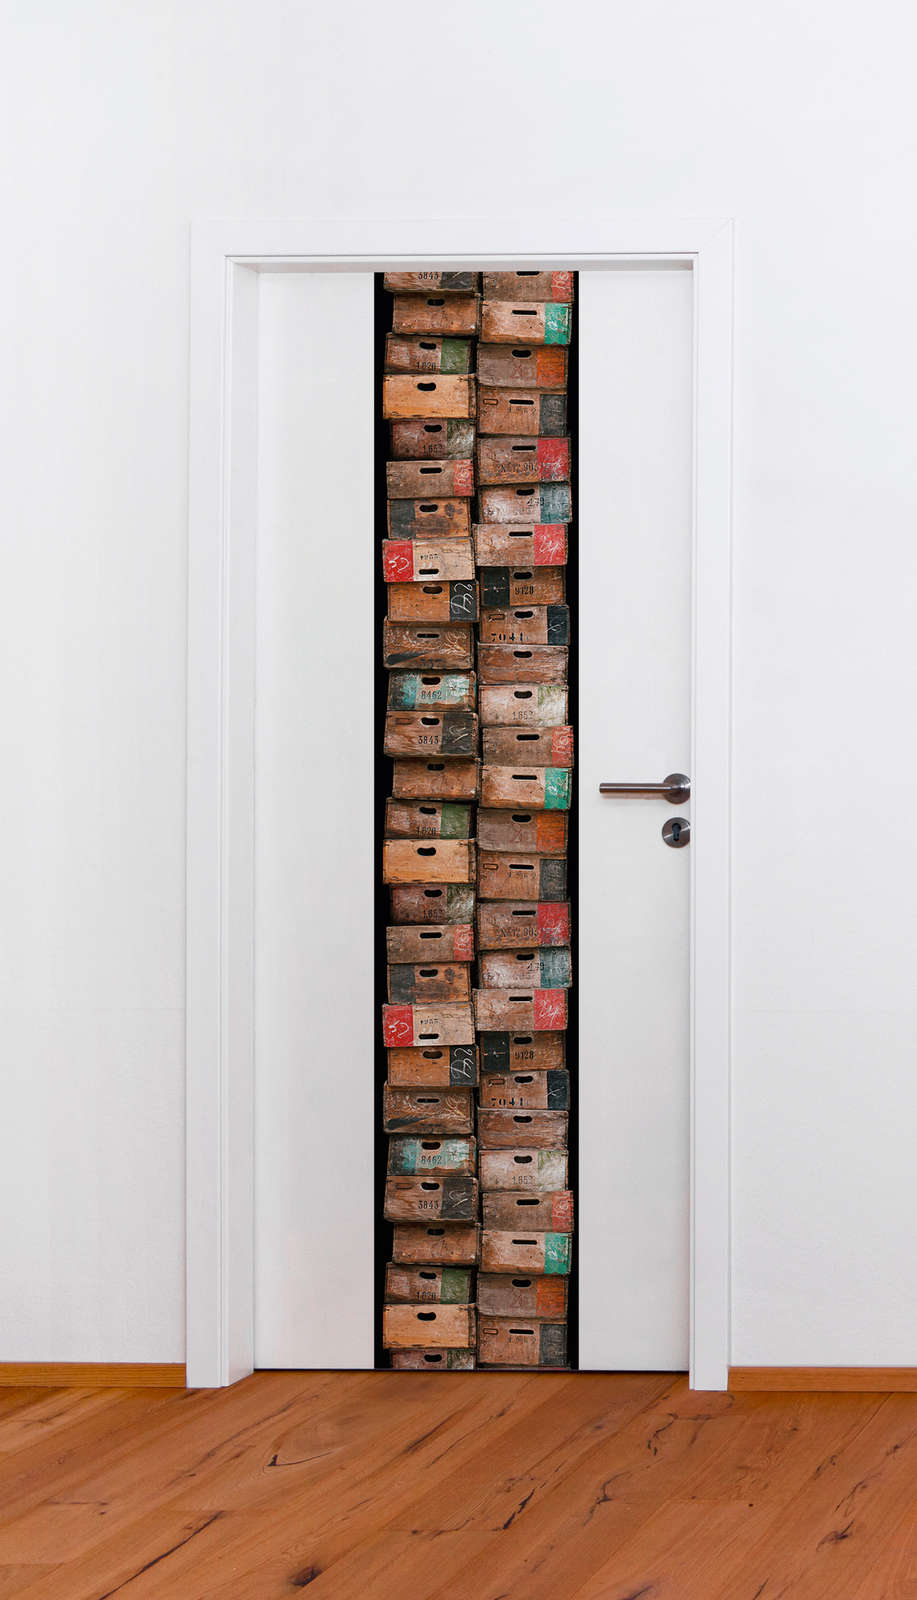             Papier peint à motifs avec caisses en bois rustiques, look usé - marron, multicolore
        